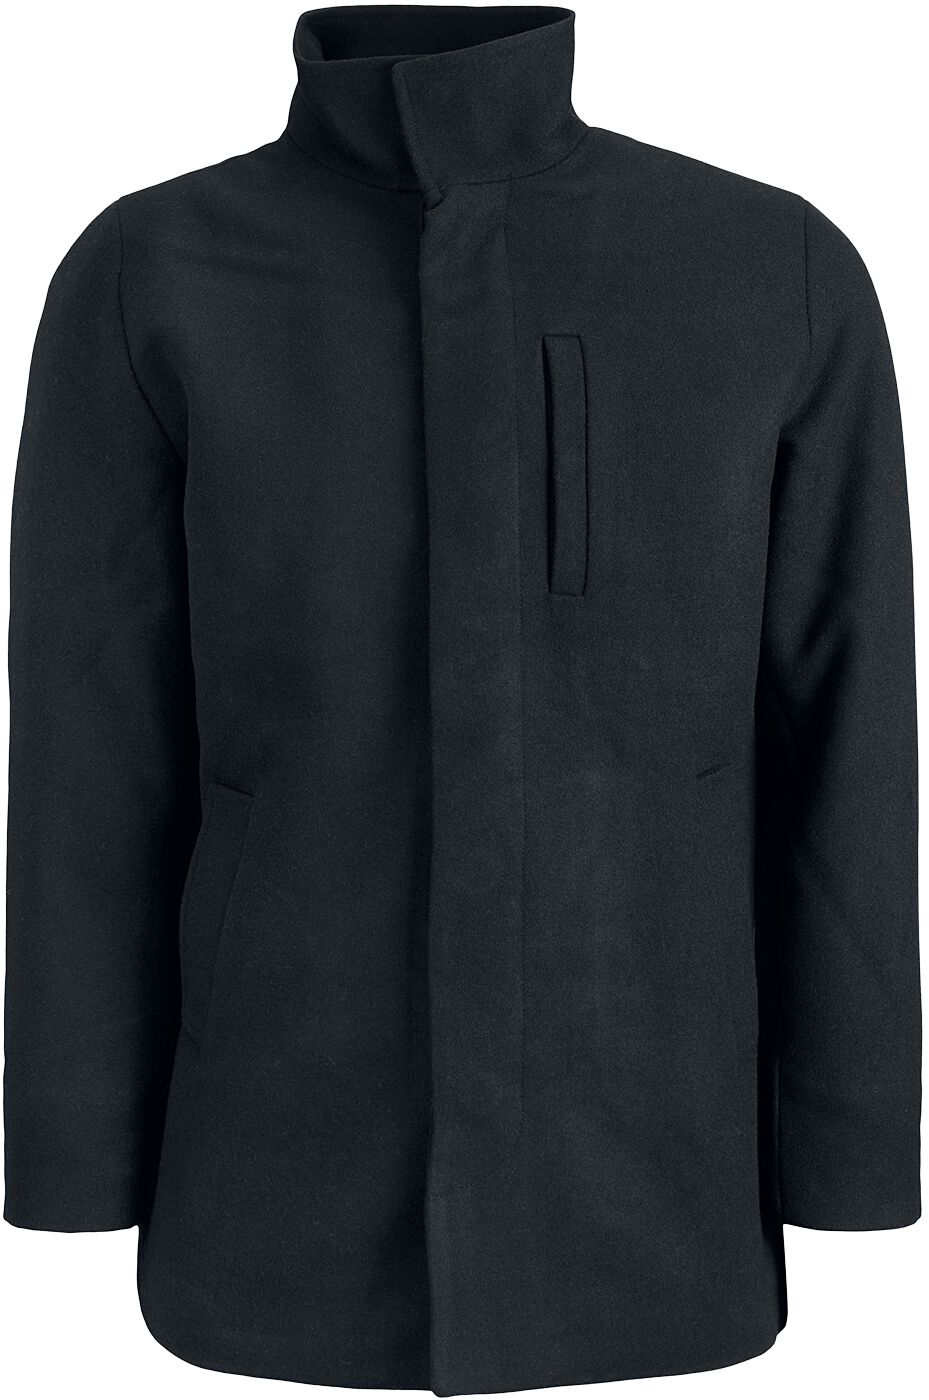 Jack & Jones Dunham Wool Jacket Winterjacke schwarz in XL von jack & jones